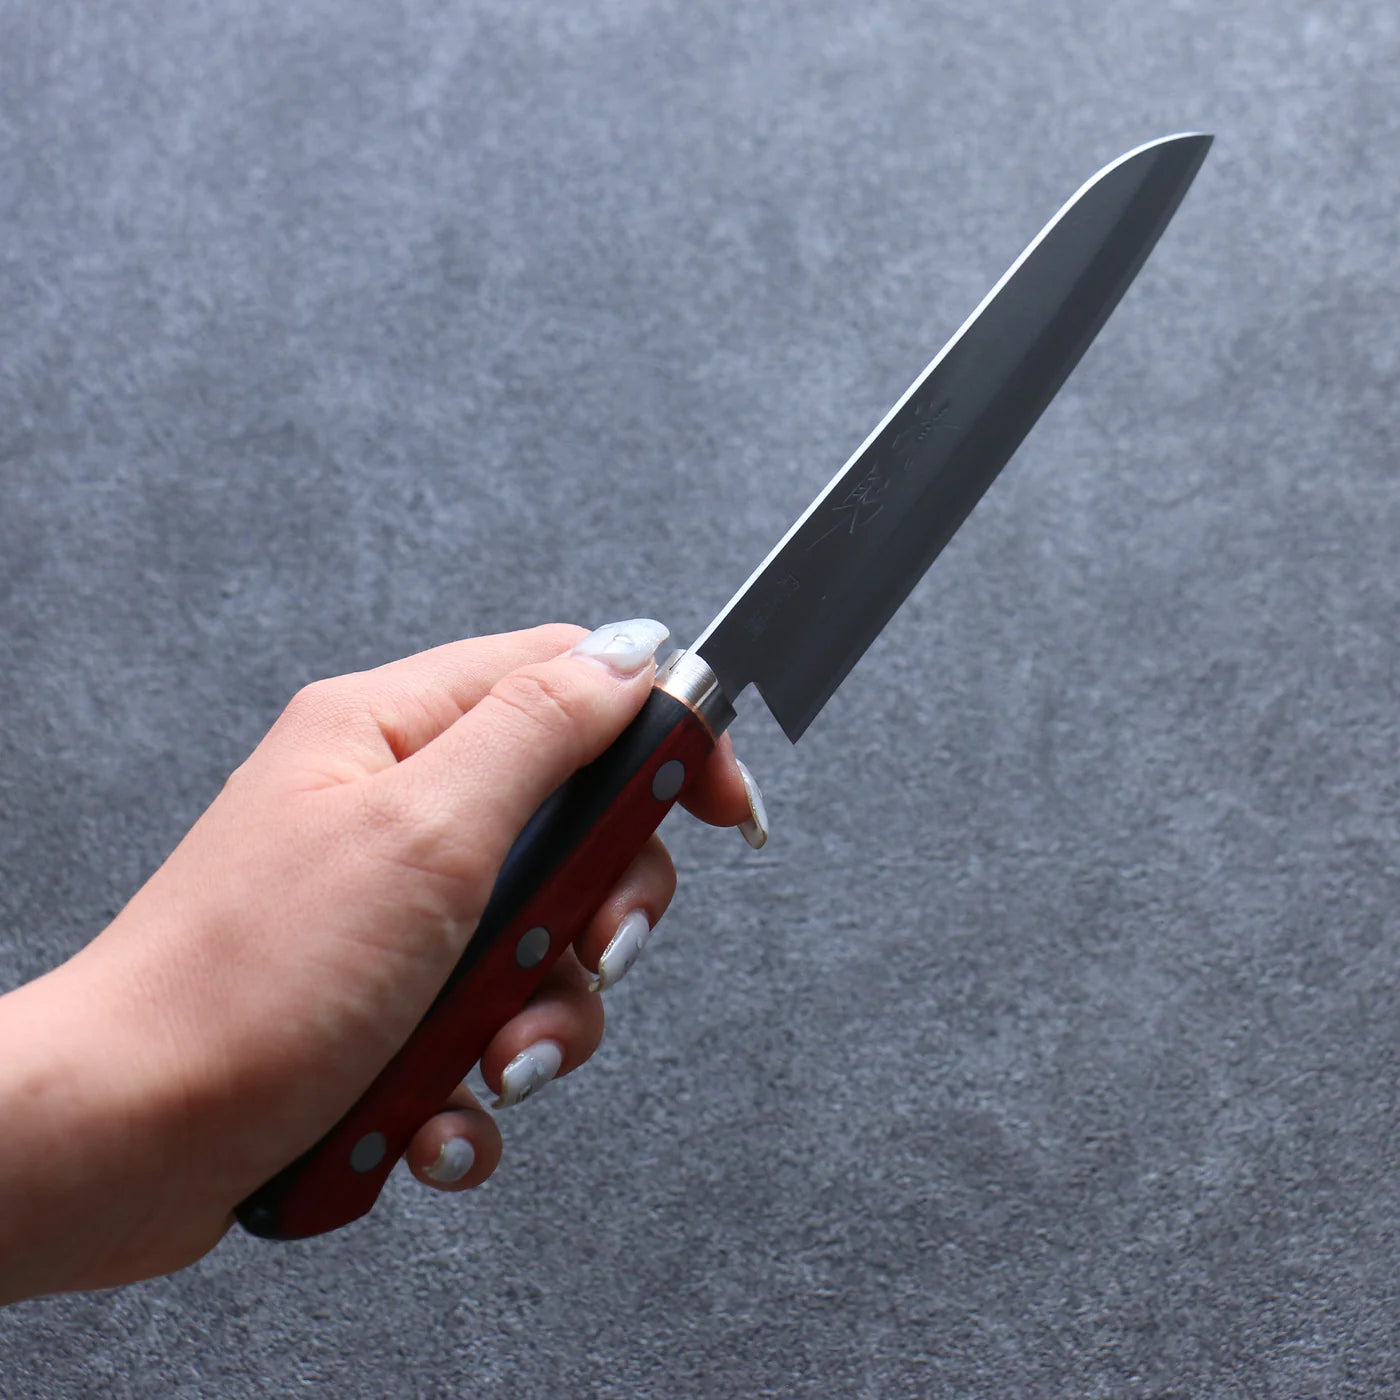 Santoku-Mehrzweckmesser aus superblauem Stahl der Marke Seisuke, kleines japanisches Messer, 140 mm roter und schwarzer Sperrholzgriff